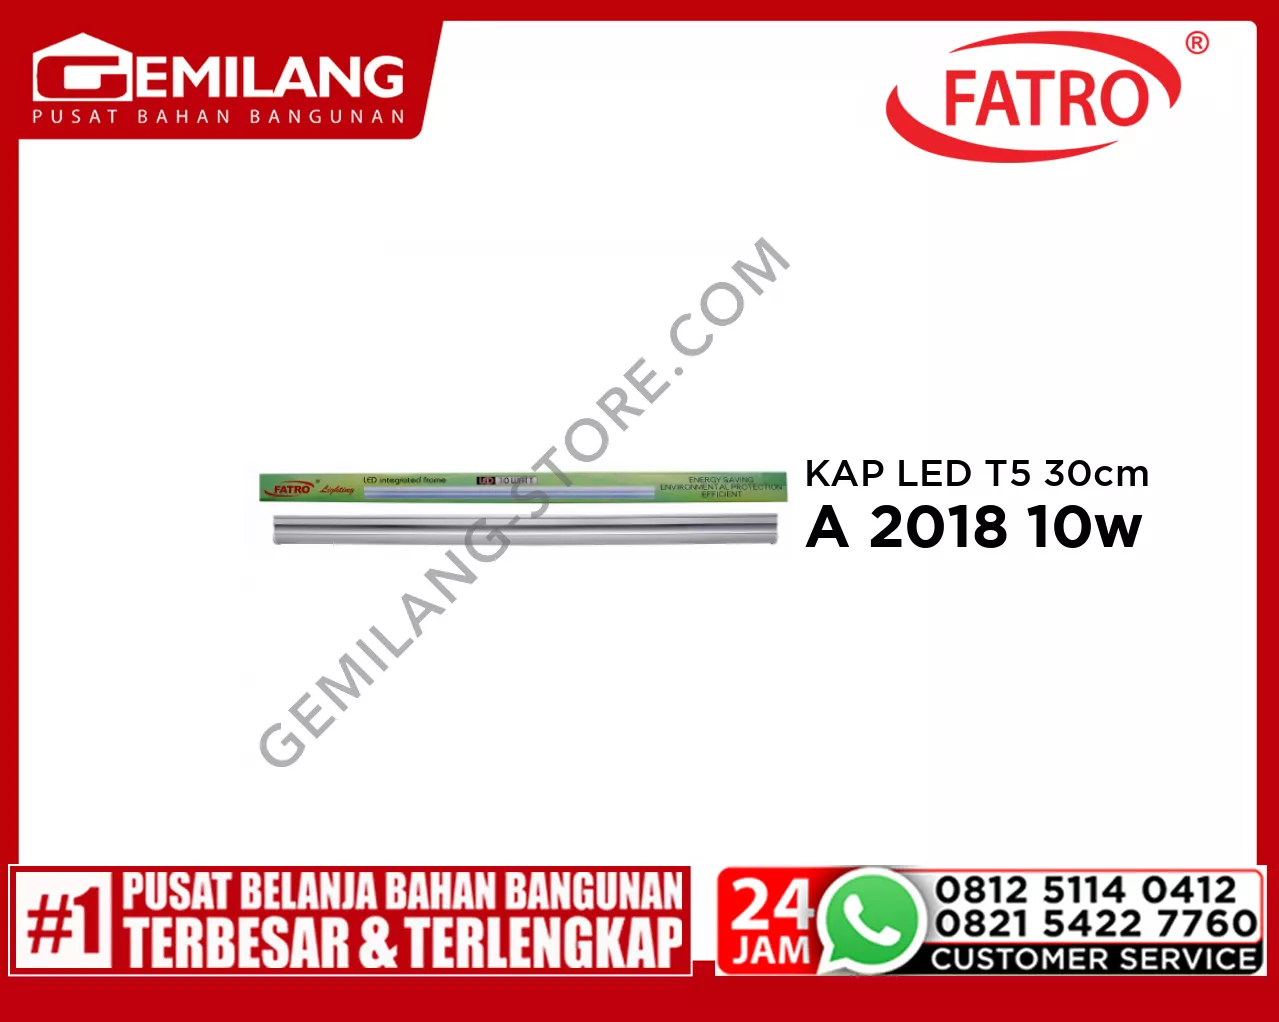 FATRO KAP LED T5 60cm W.WH SA 2018 10w